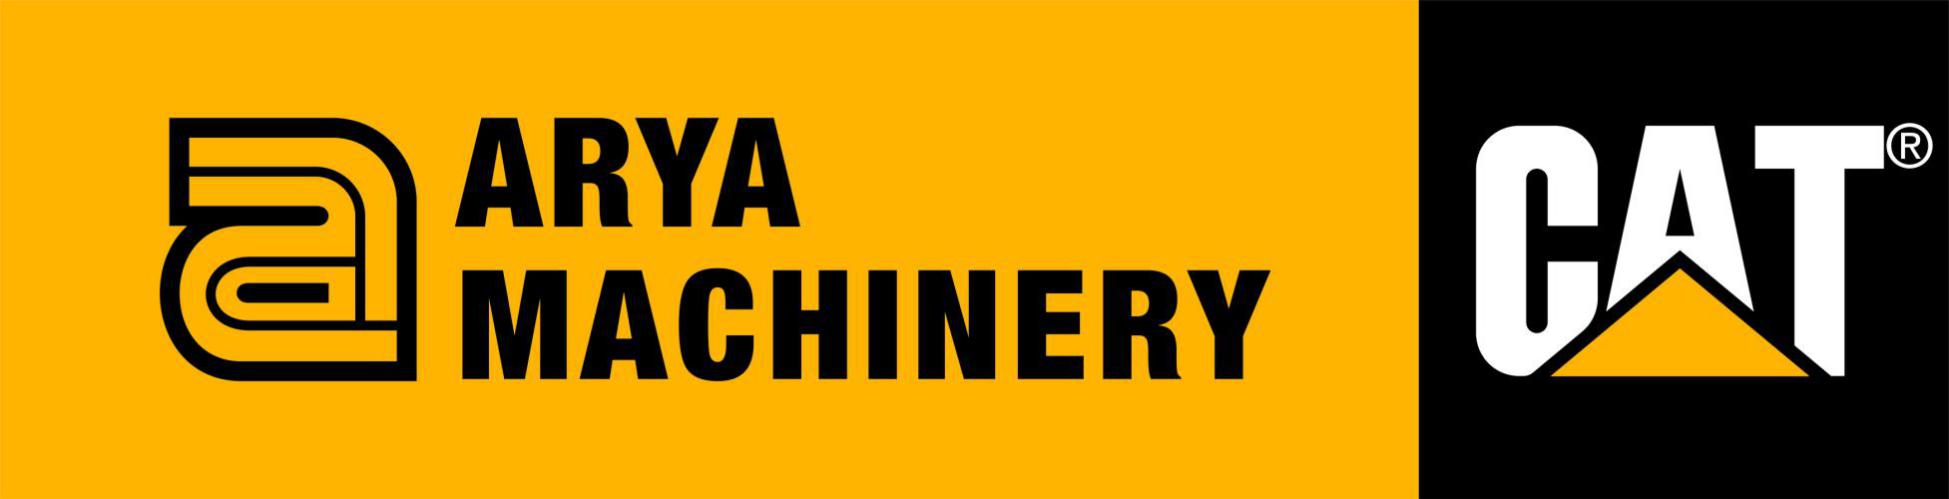 کد تخفیف ماشین سنگین آریا - Arya Heavy Machinery